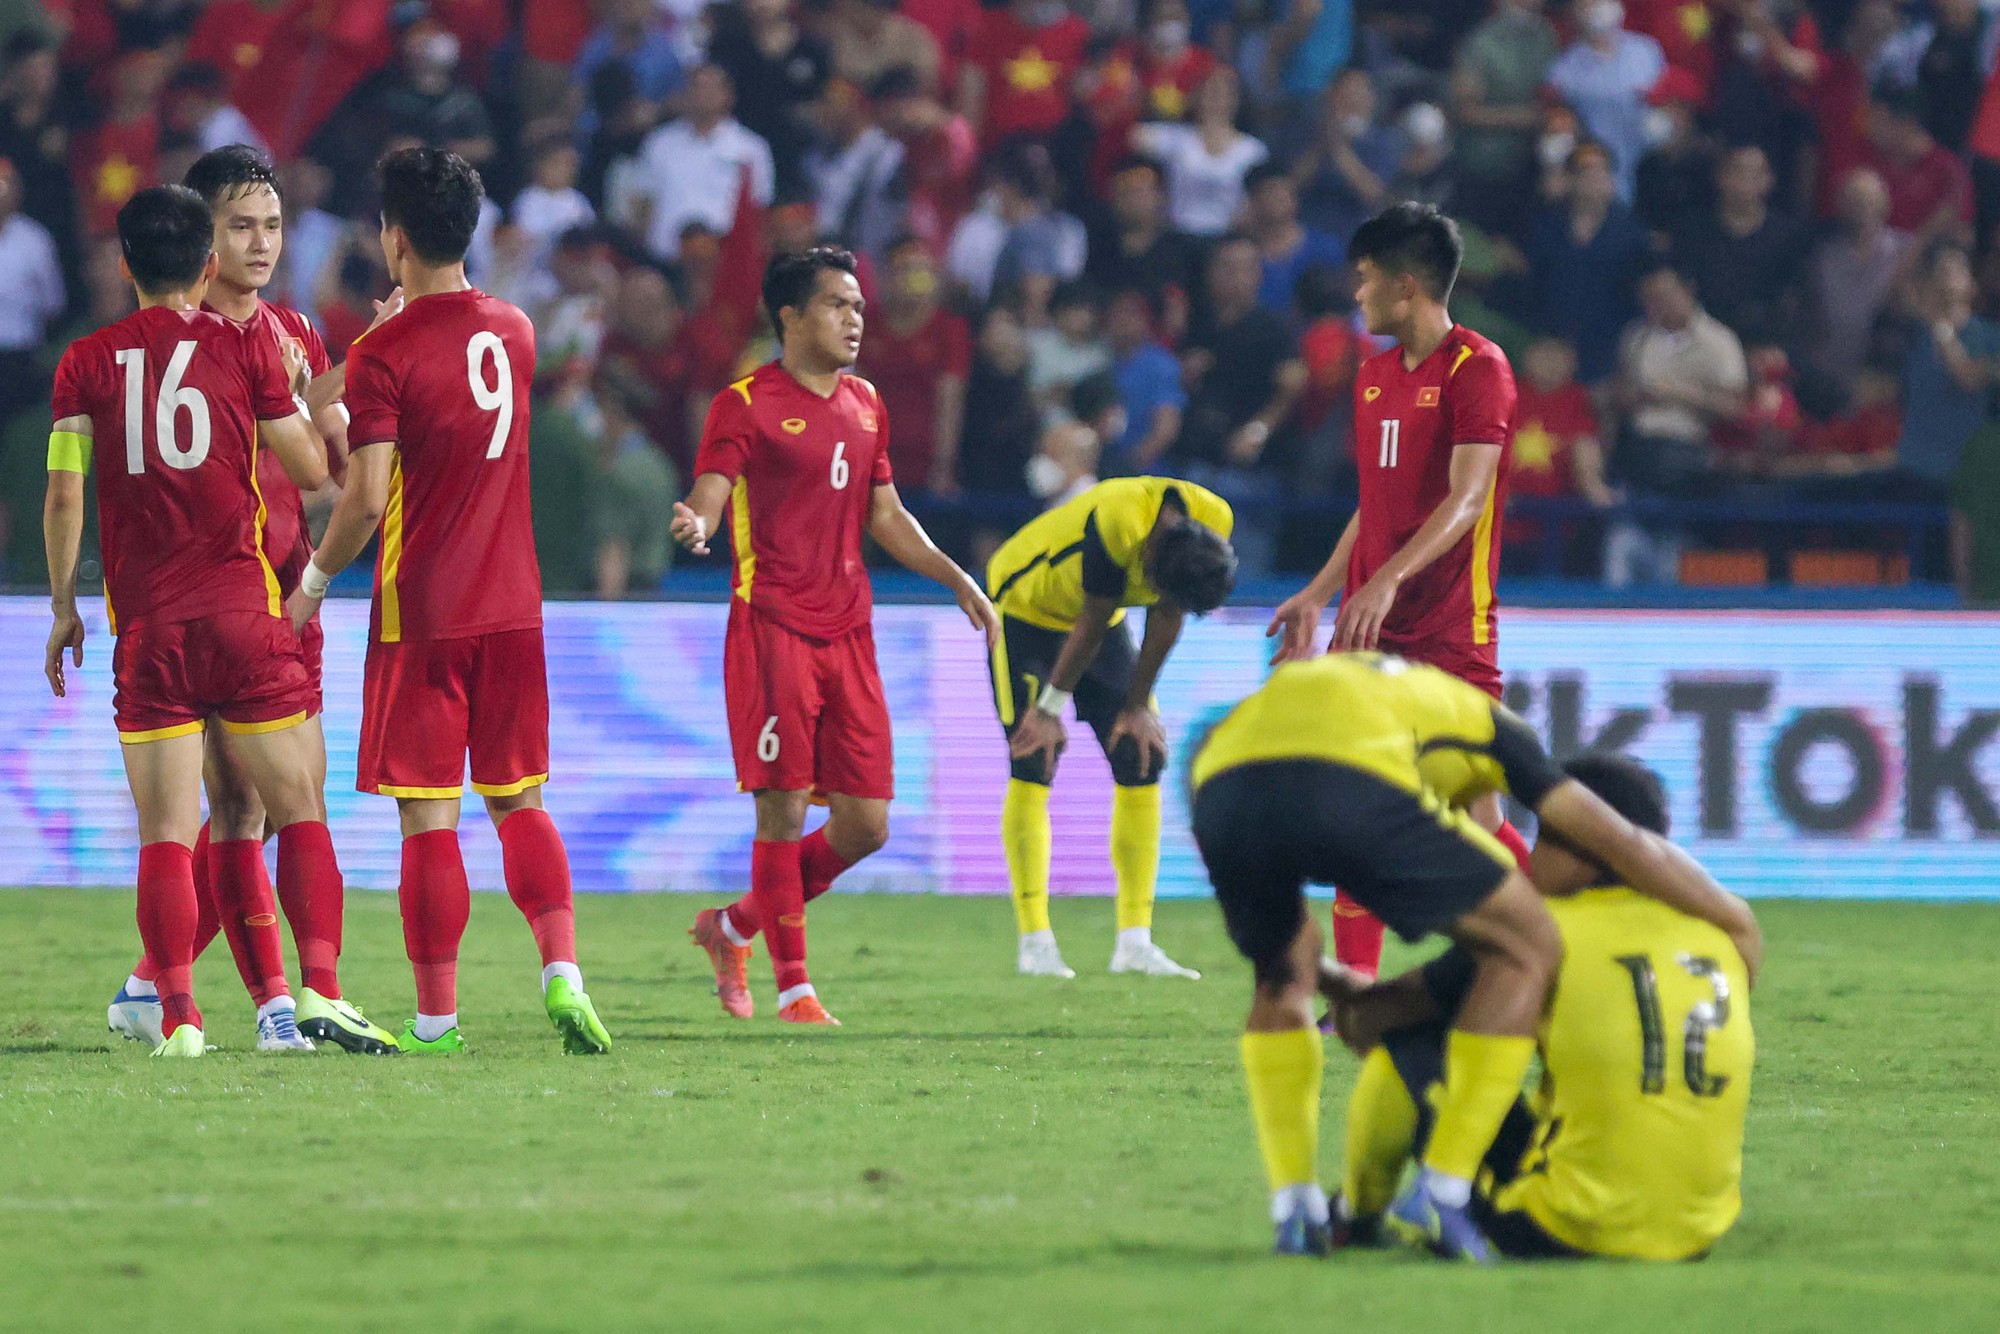 U23 Việt Nam: Hãy cùng đón xem hình ảnh của đội tuyển U23 Việt Nam - những chàng trai trẻ, tài năng đầy khát khao chiến thắng trên sân cỏ. Dù thất bại hay chiến thắng, họ luôn là niềm tự hào của đất nước và đã ghi dấu ấn đậm nét trong trái tim người hâm mộ.